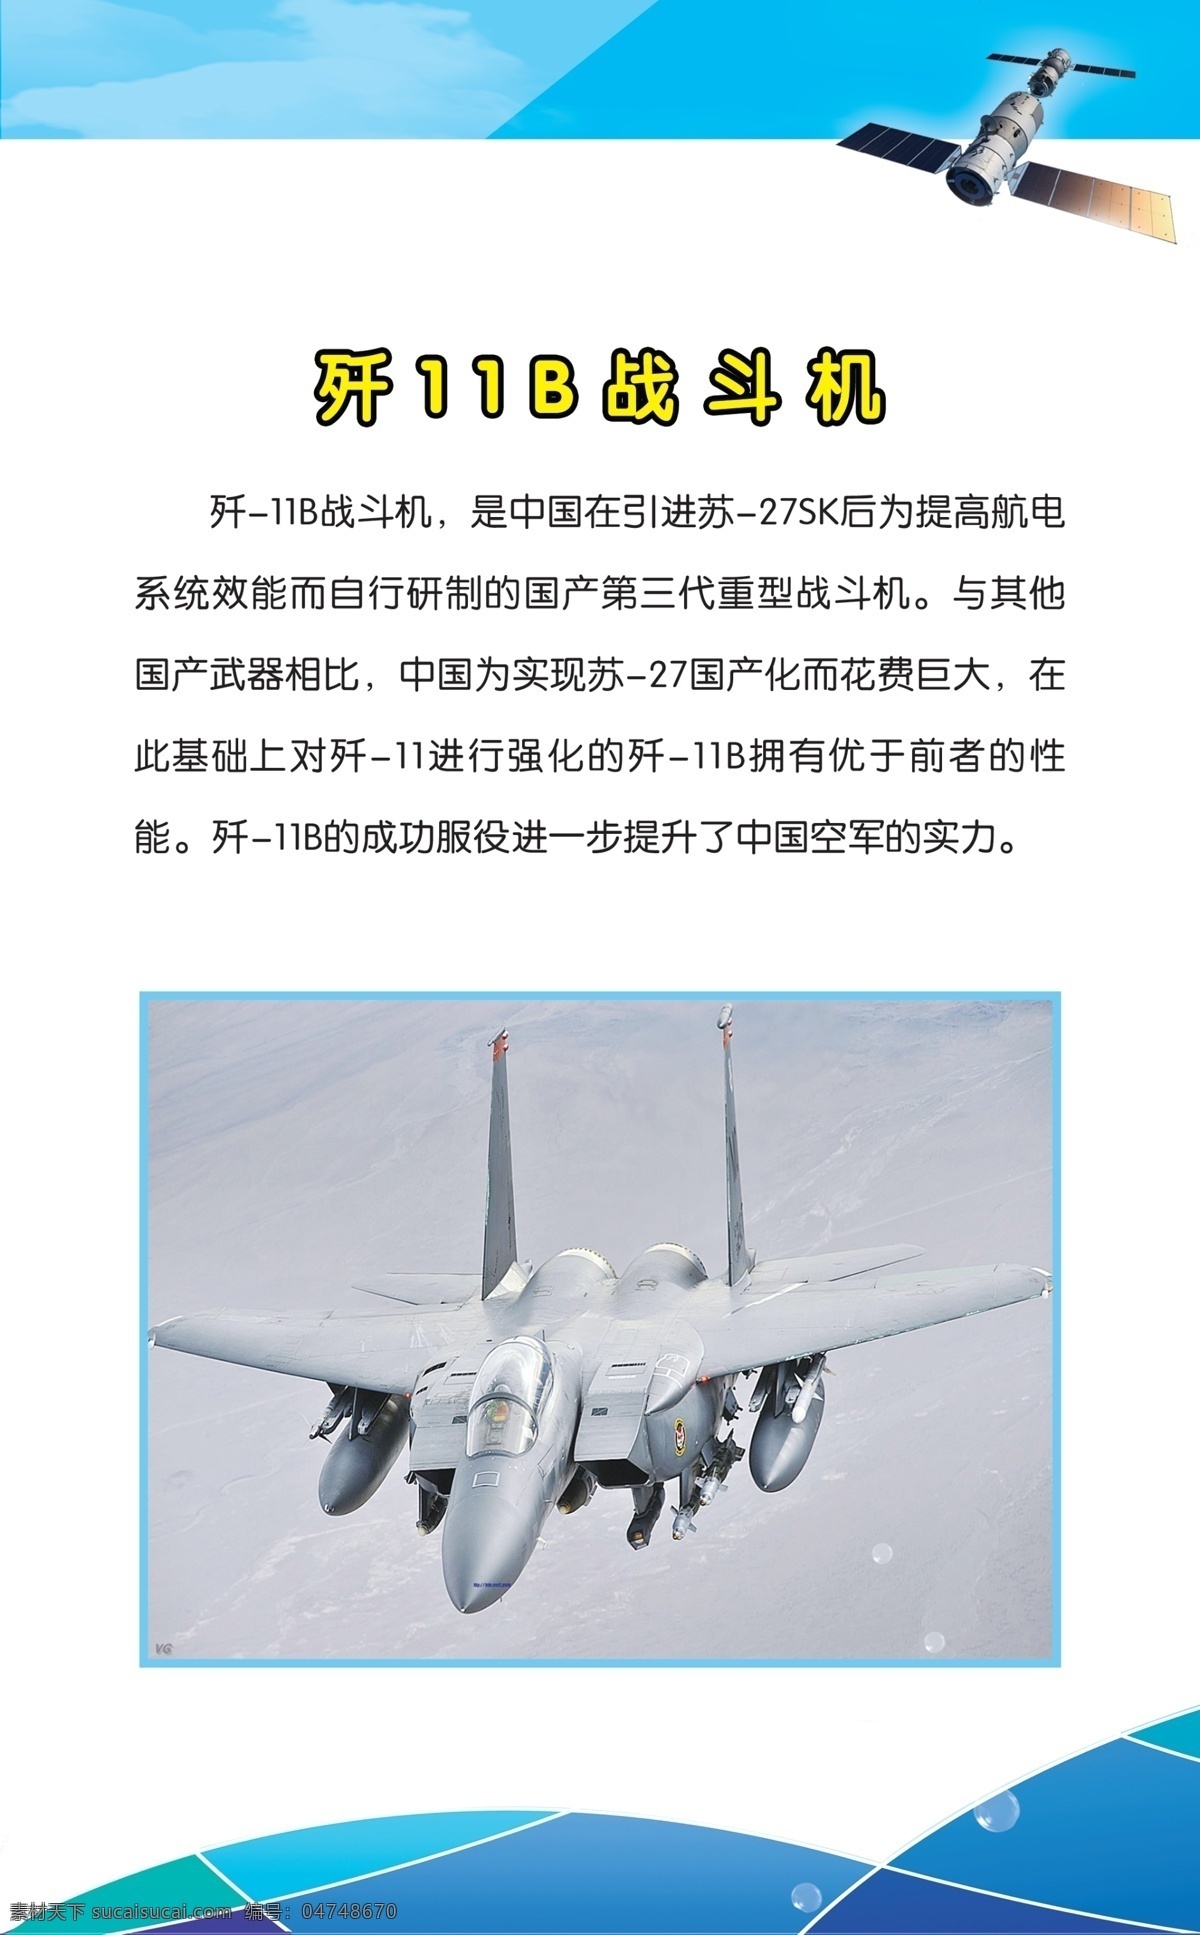 歼 11b 战斗机 展板 国产飞机 中国空军 试飞 军事武器 现代科技 展板模板